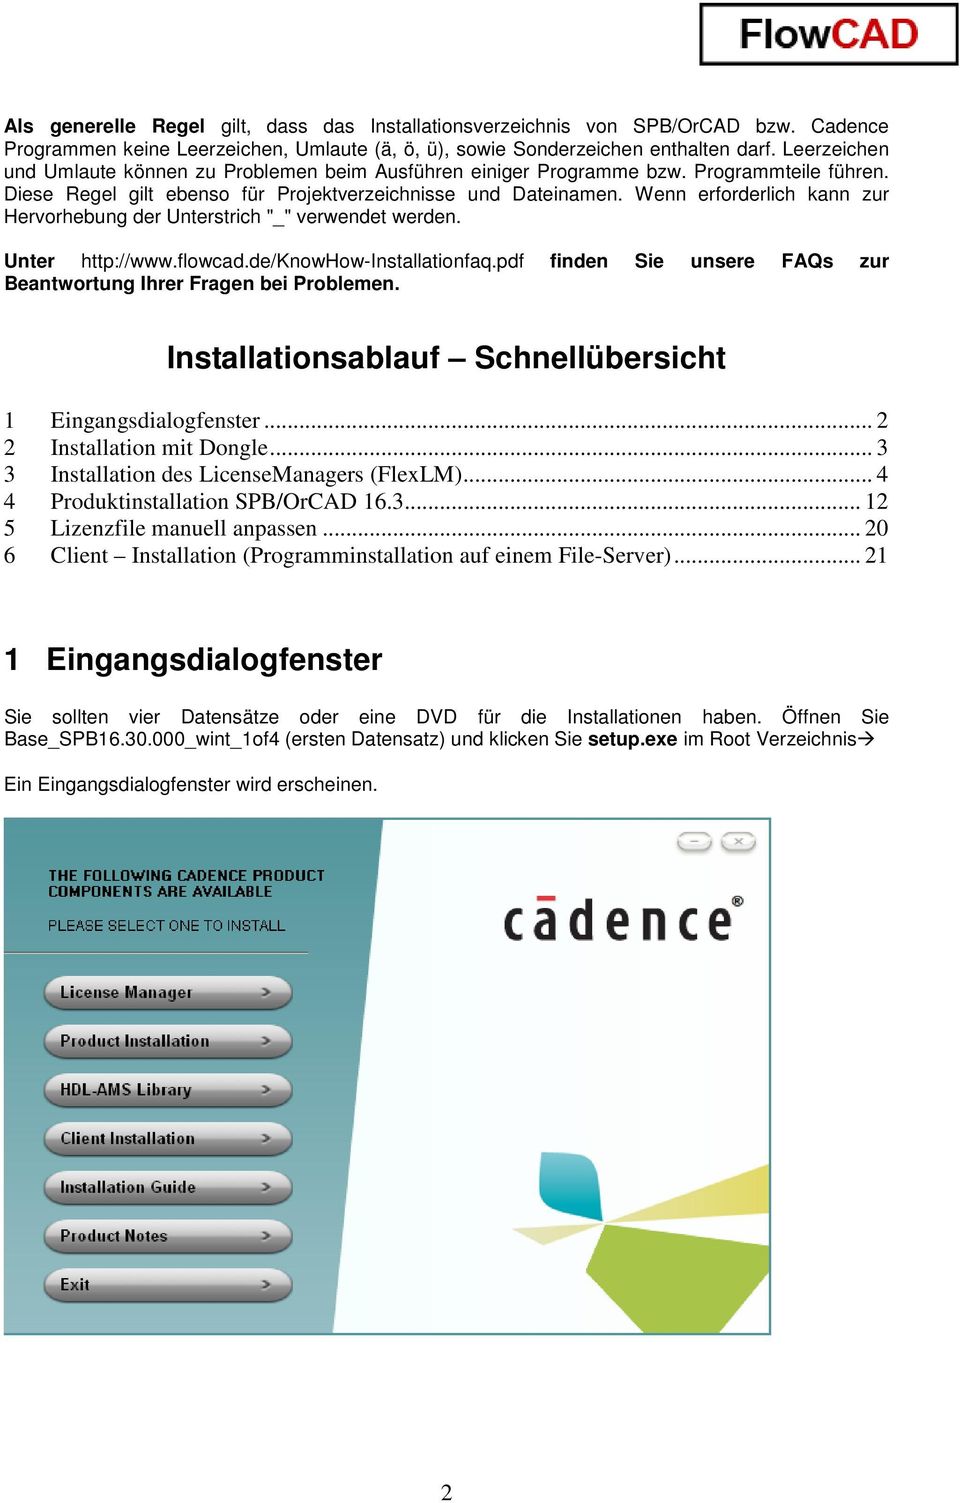 Wenn erforderlich kann zur Hervorhebung der Unterstrich "_" verwendet werden. Unter http://www.flowcad.de/knowhow-installationfaq.